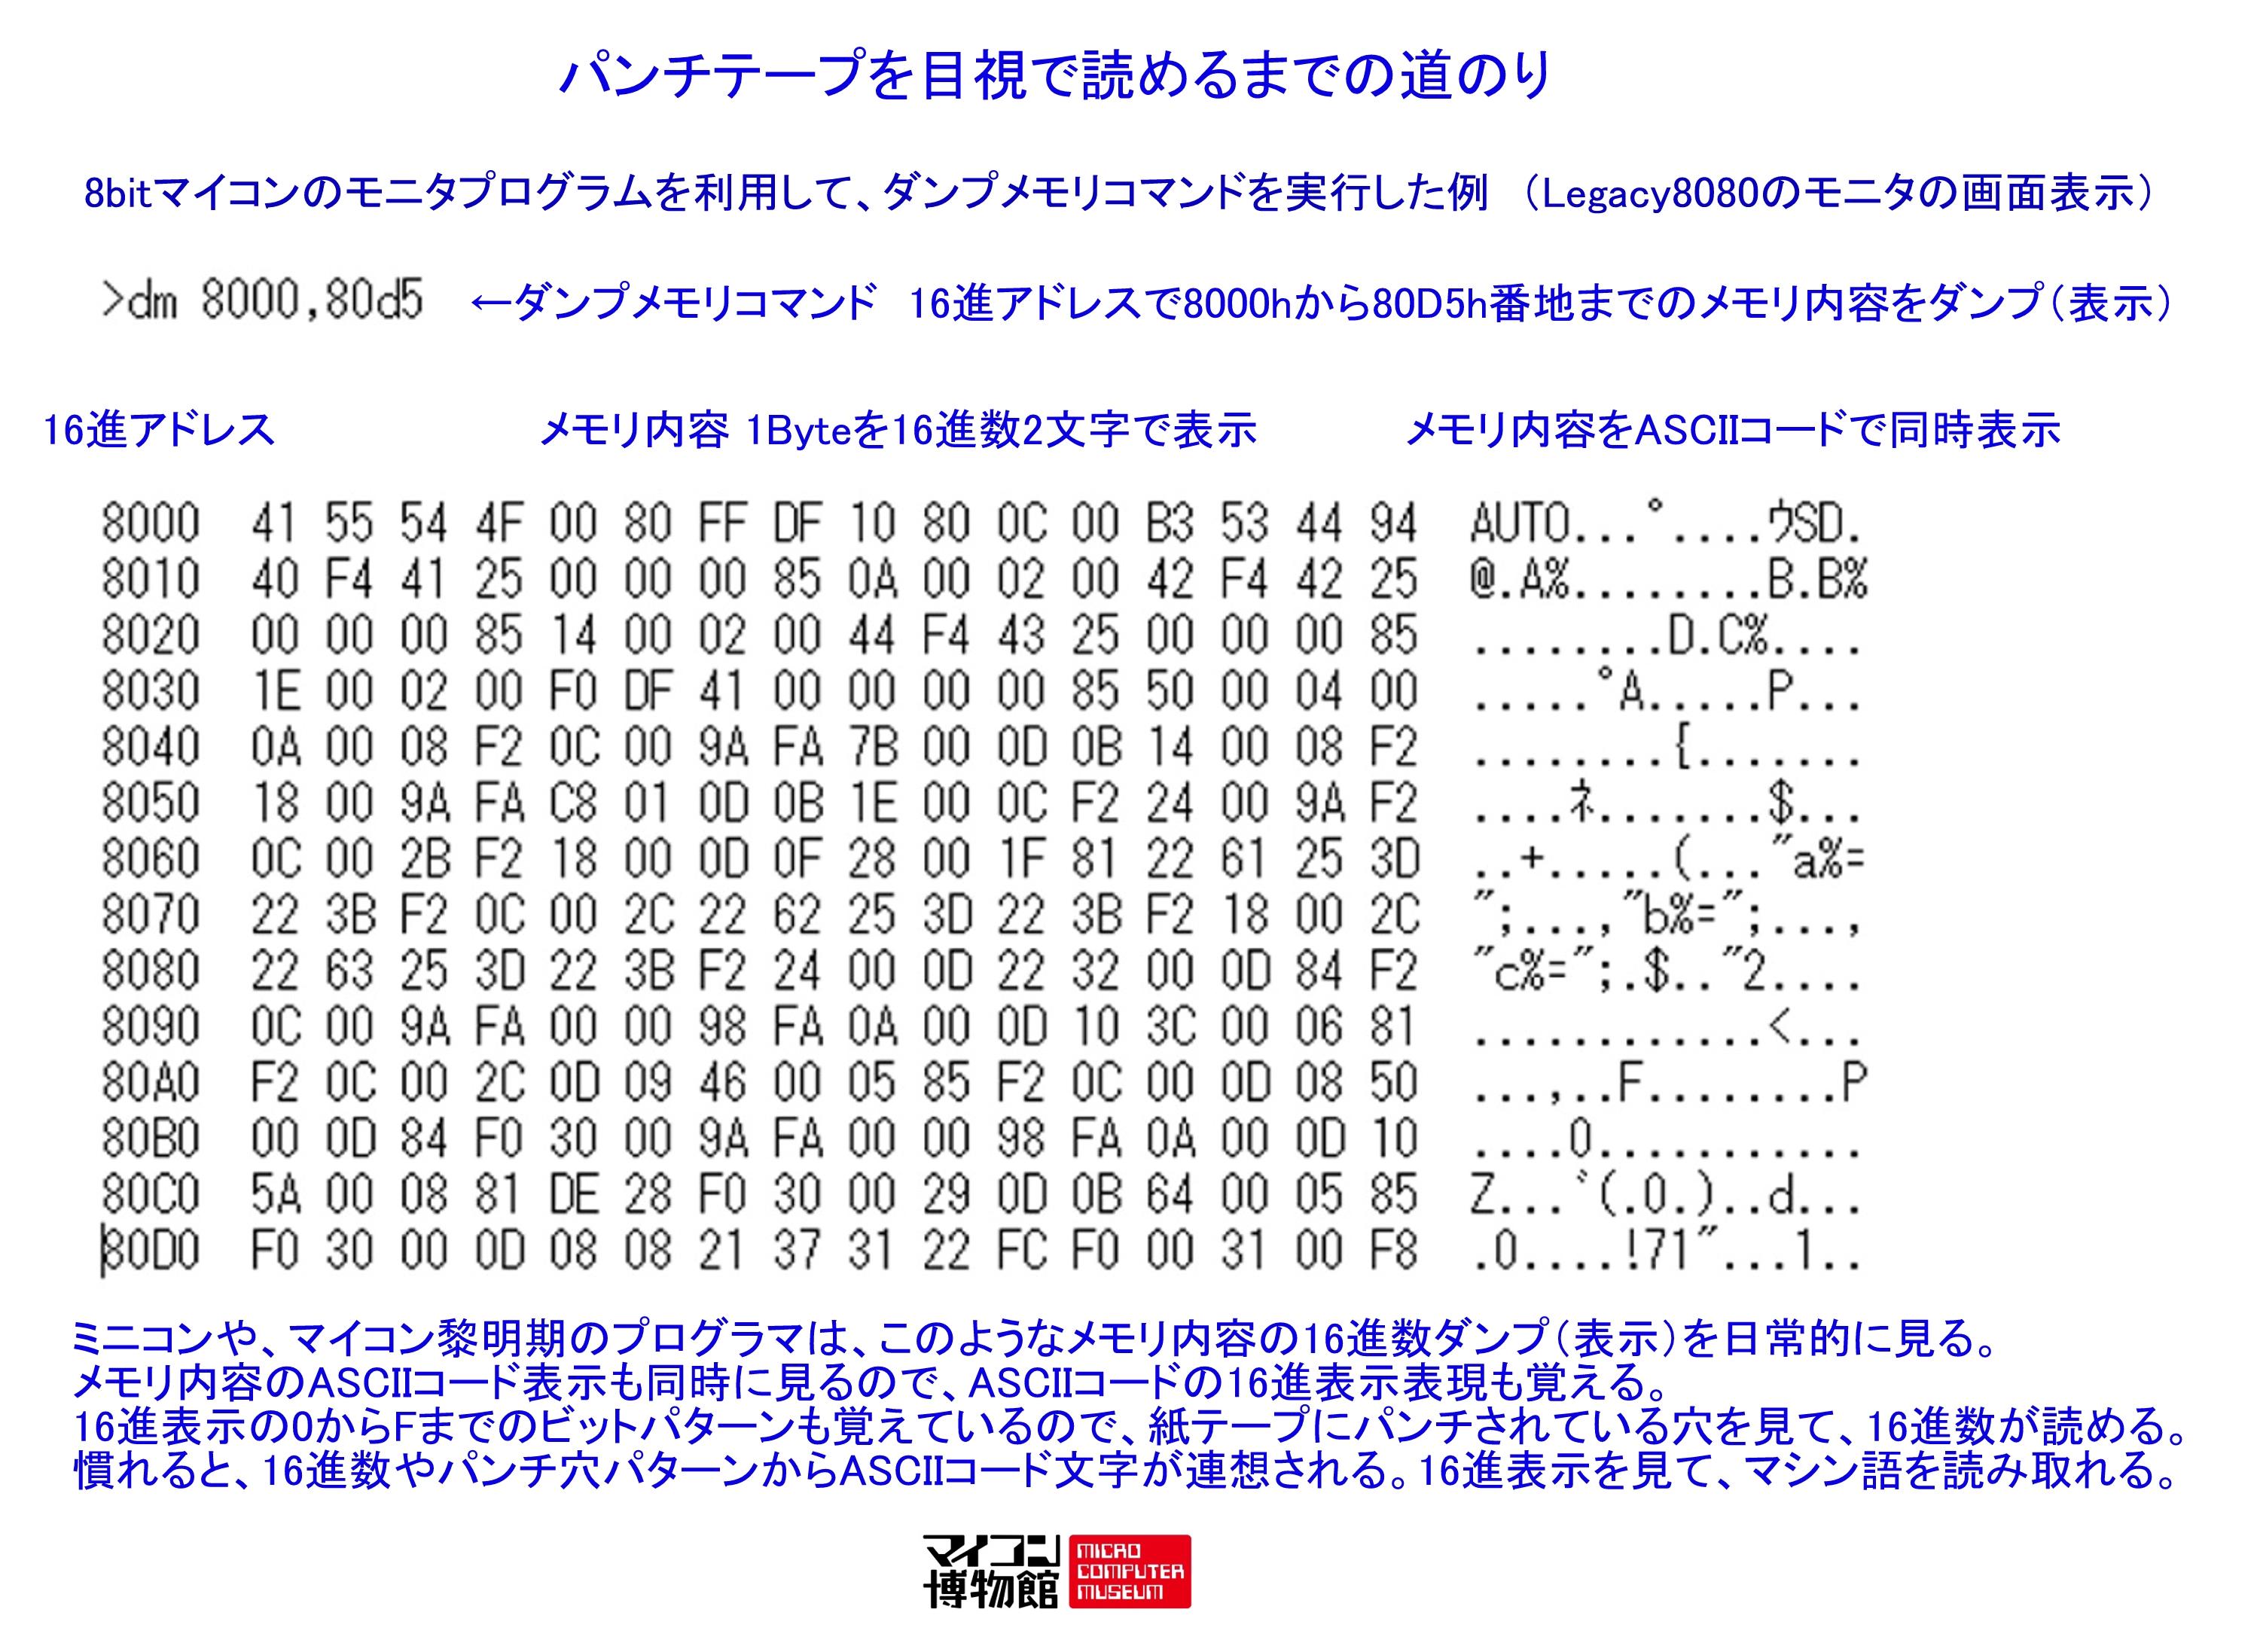 夢の図書館 マイコン博物館 模ラ博物館 公式 Microcomputer Museum Japan パンチテープの穴を見ると 暗号のように見える コンピュータ系のパンチの実際は メモリ内容のダンプ時に1byteを16進数のasciiコード2文字でパンチ アセンブラやbasicなどのソース